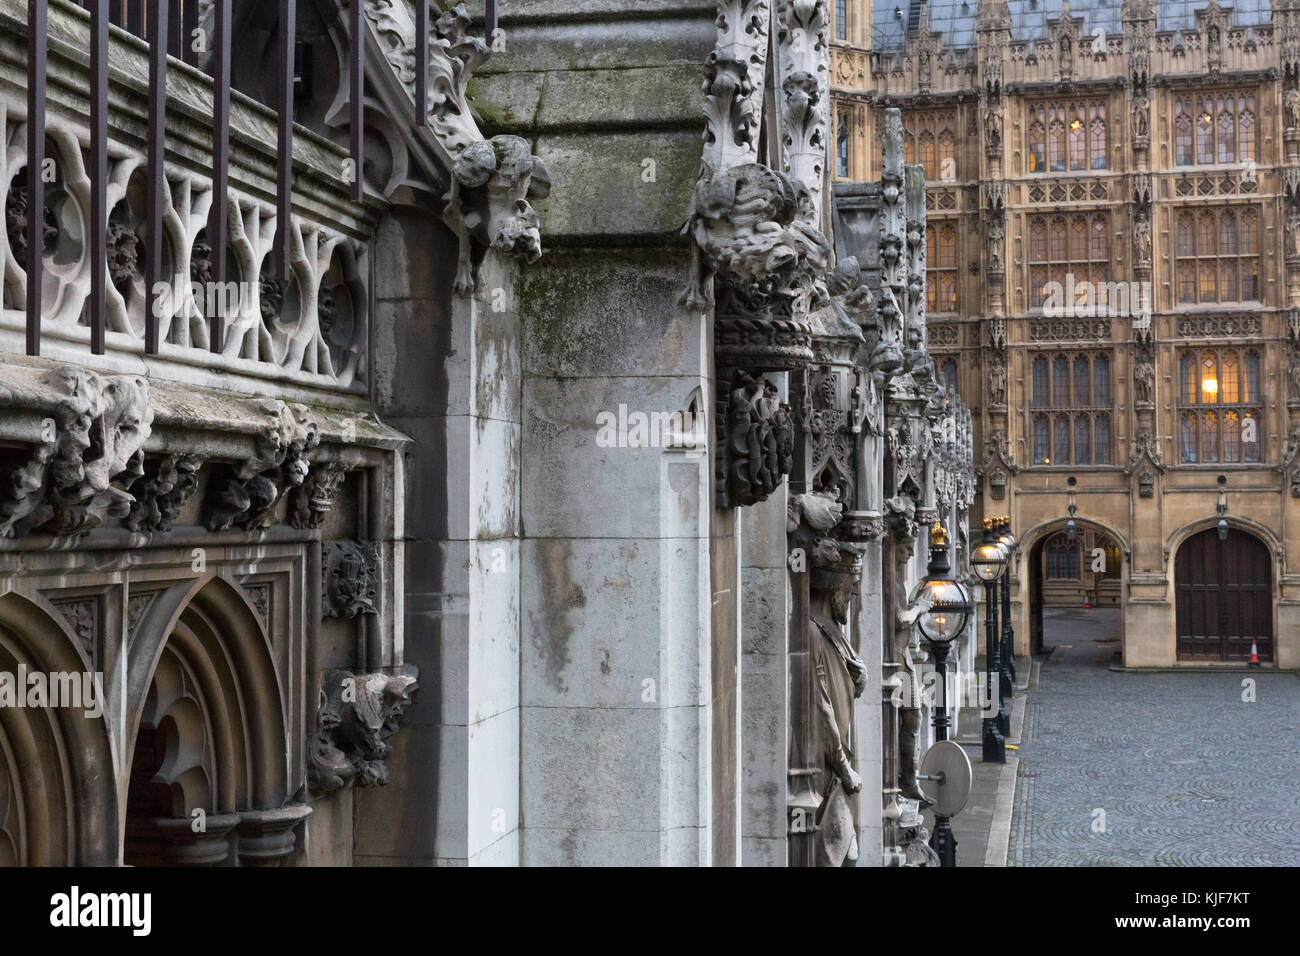 Il Palazzo di Westminster architettura gotica dettaglio - Londra, Inghilterra - UK Foto Stock